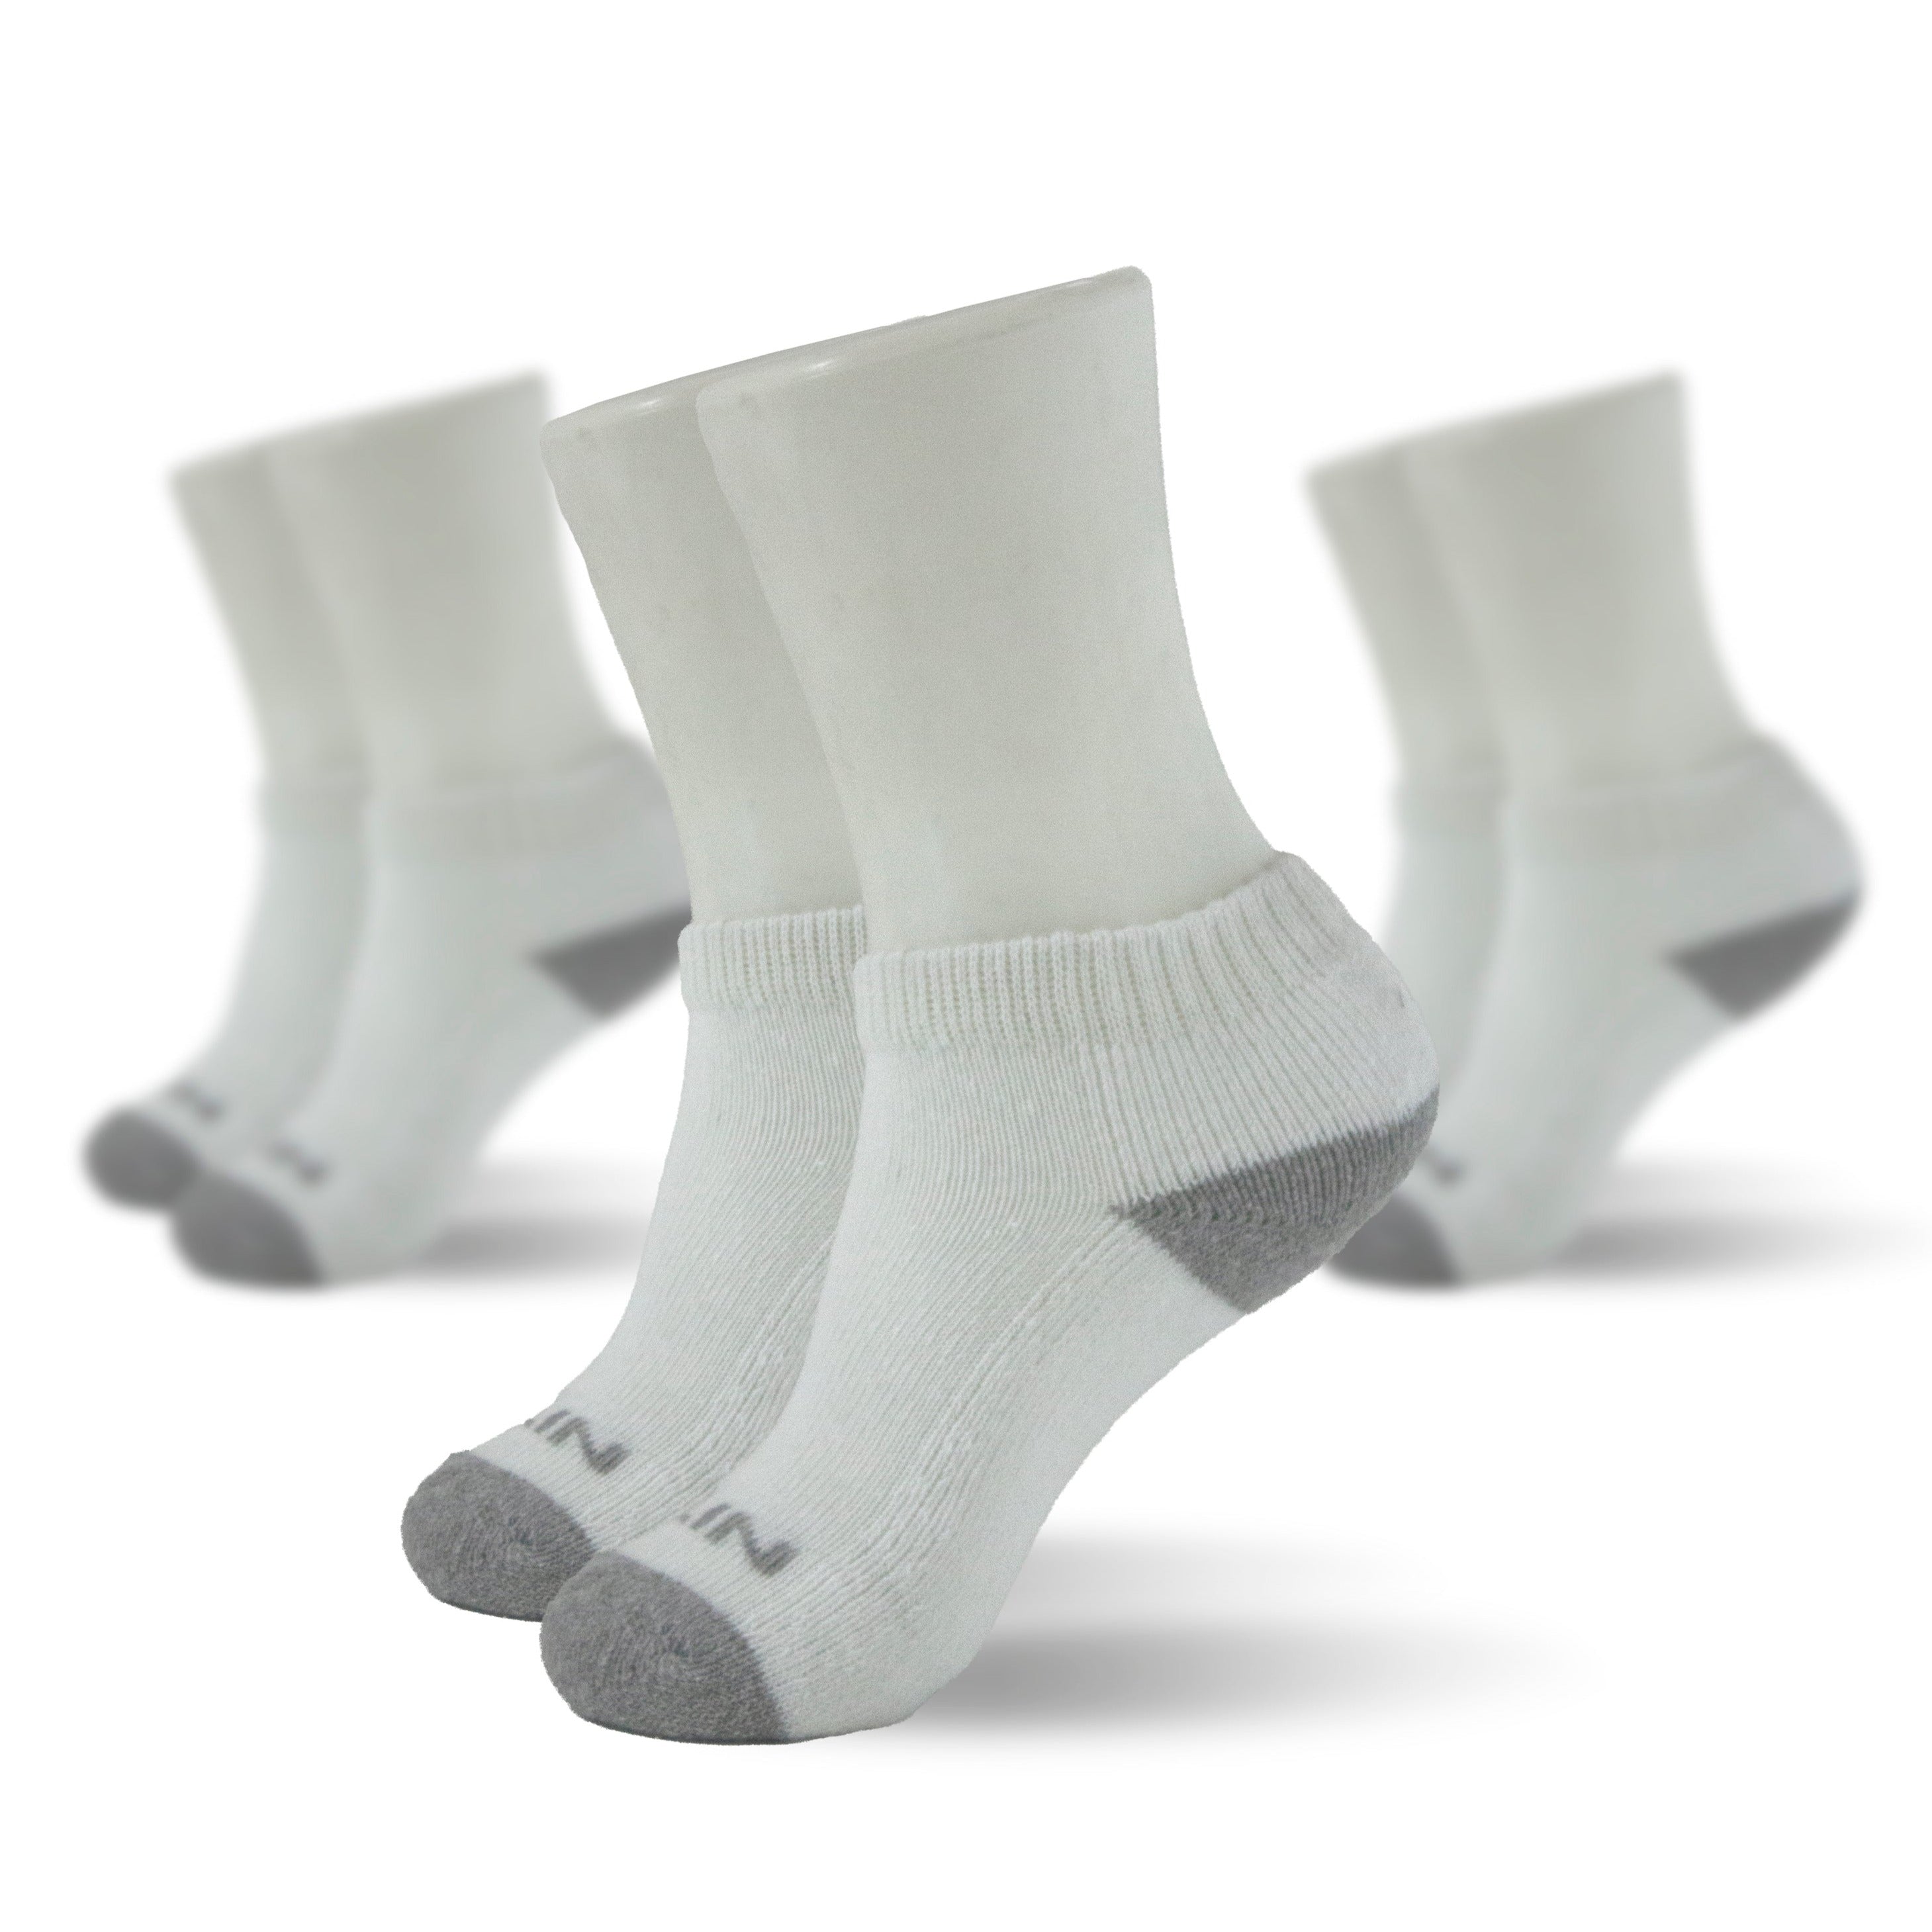 OPALINE Calcetines de niño deportivo pack de 3 blanco (6 meses a 6 años)